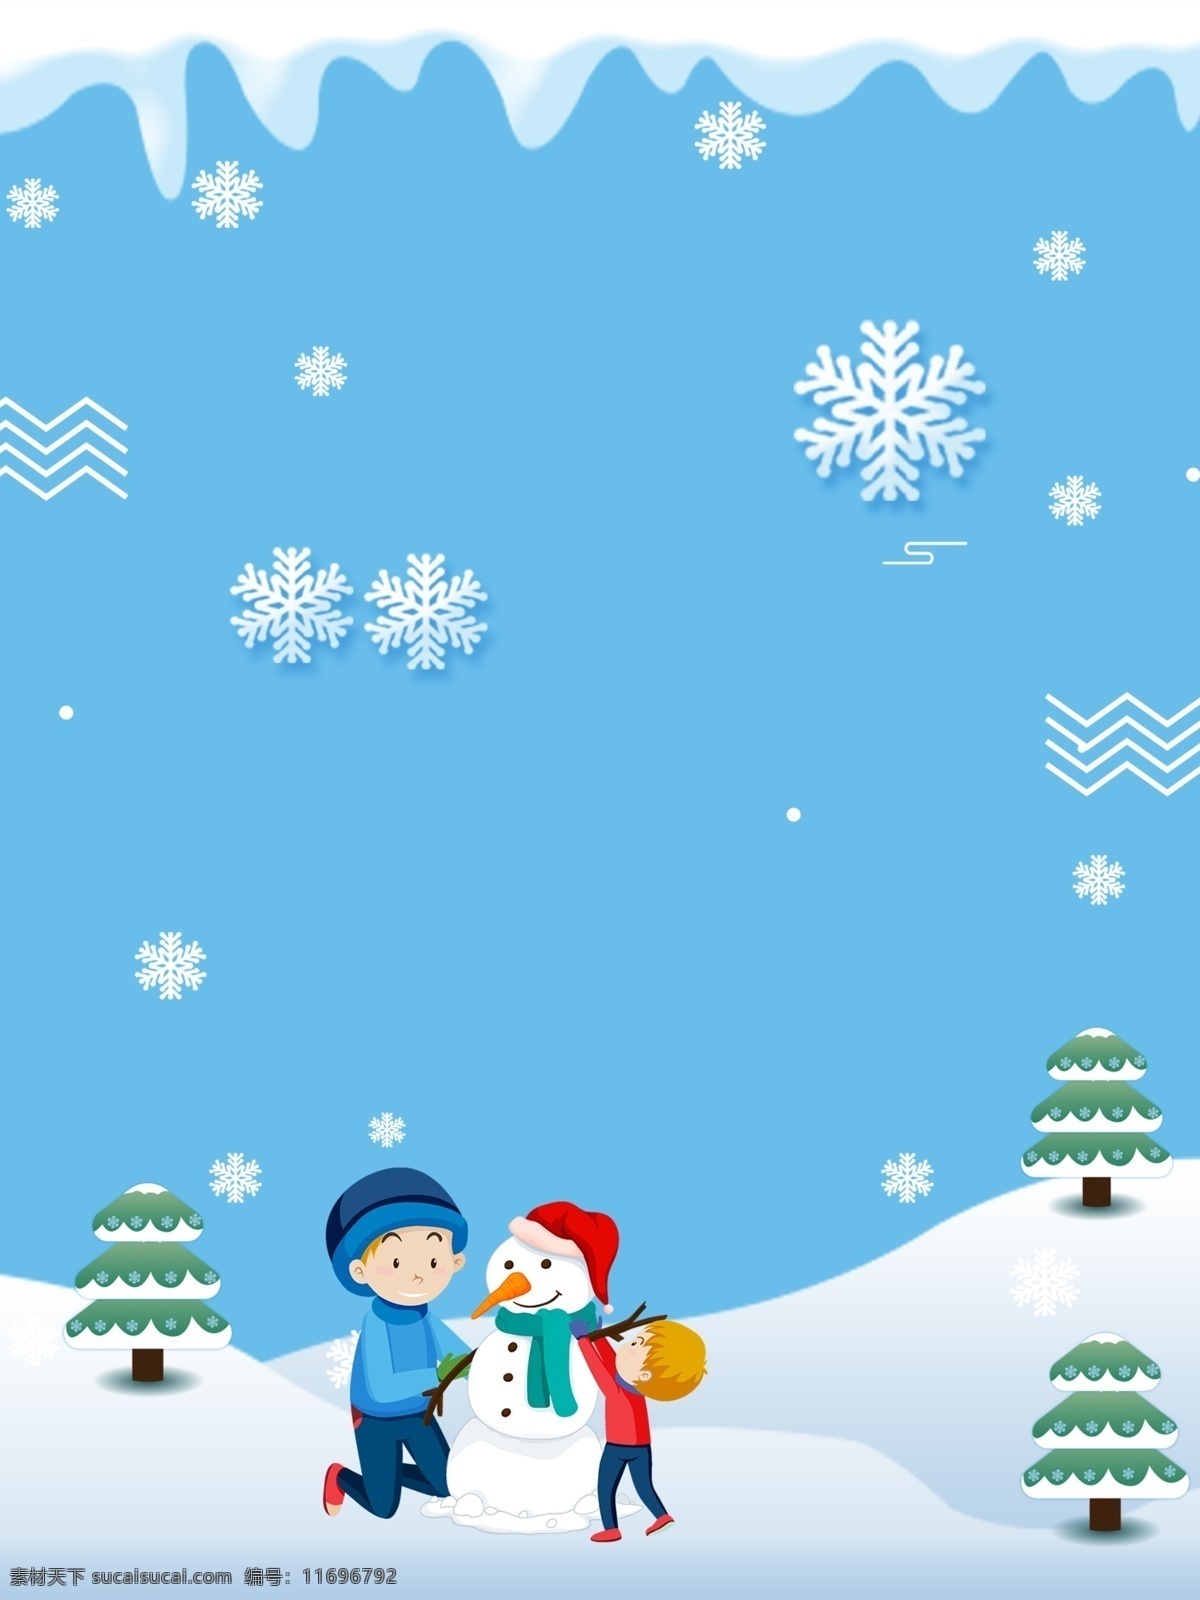 圣诞 狂欢 购 雪人 背景 手绘背景 圣诞快乐 水彩背景 平安夜 圣诞节促销 冬至